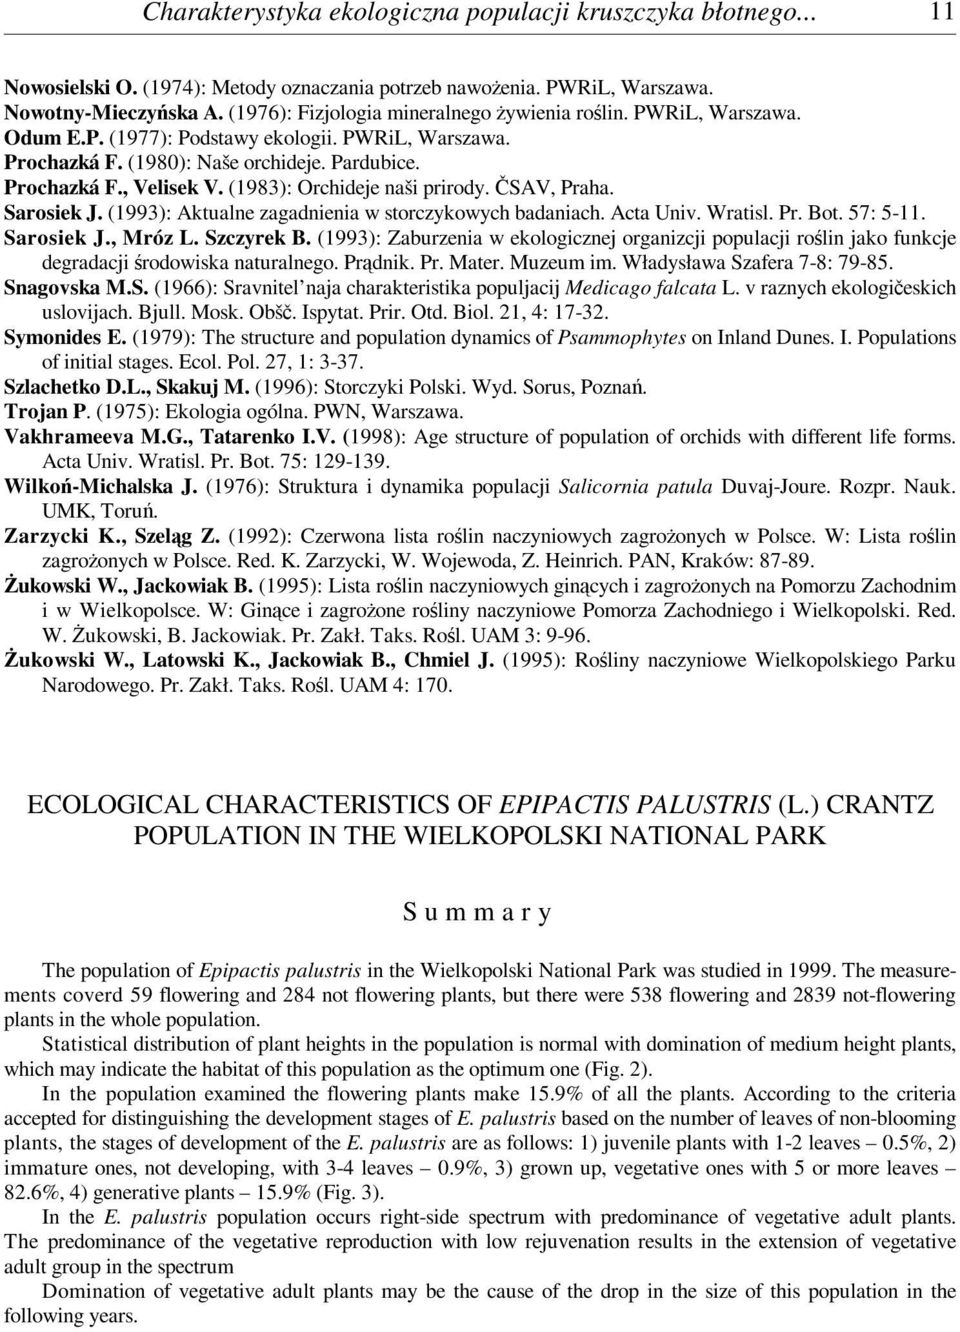 (1983): Orchideje naši prirody. ČSAV,Praha. Sarosiek J. (1993): Aktualne zagadnienia w storczykowych badaniach. Acta Univ. Wratisl. Pr. Bot. 57: 5-11. Sarosiek J., Mróz L. Szczyrek B.